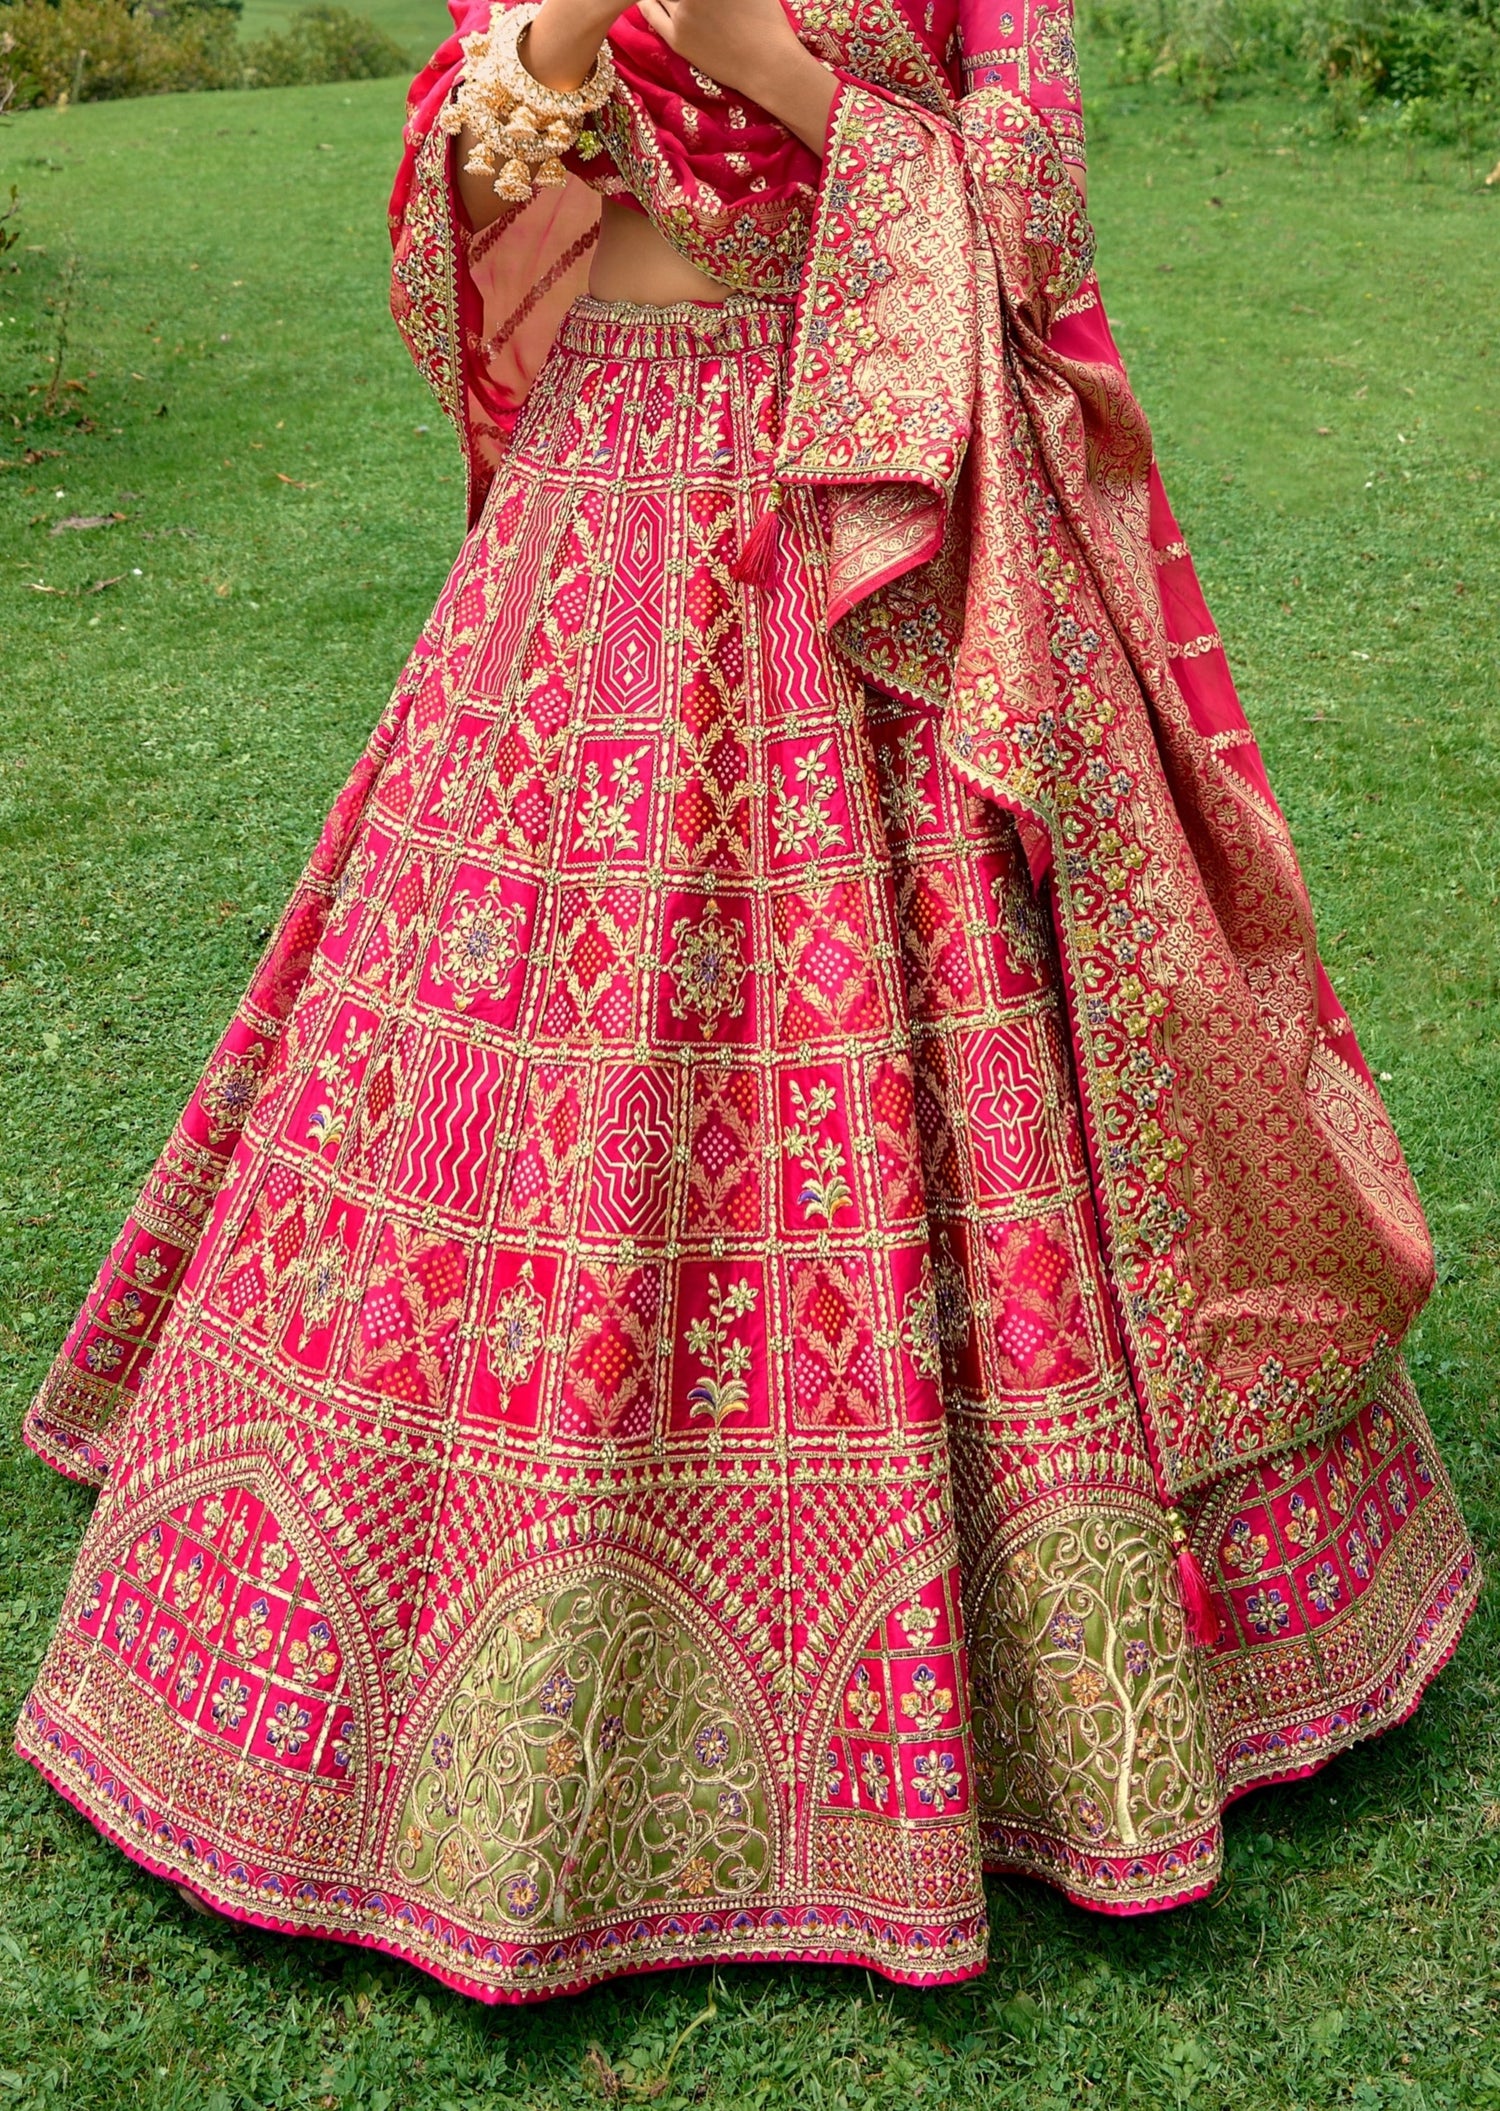 Banarasi Bandhani Lehenga in Green And Orange,Online Lehengas For Wedding,  Functions, Parties